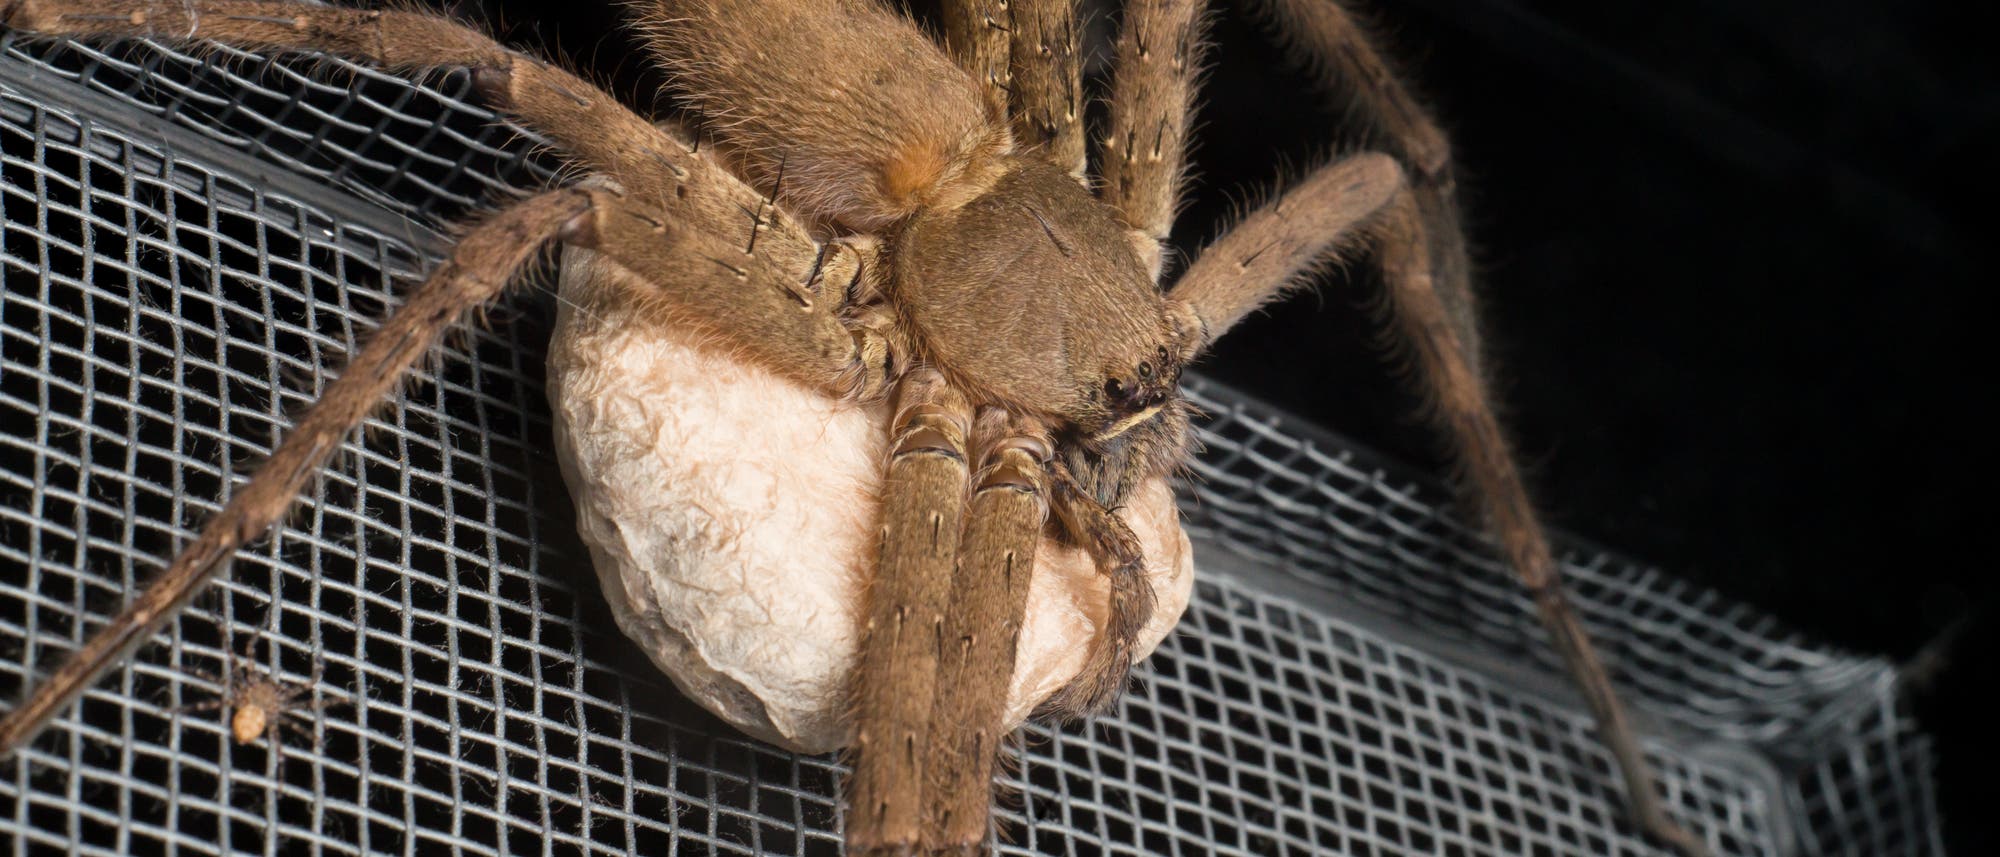 Riesenkrabbenspinnen leben unter anderem in Australien und können sehr groß werden